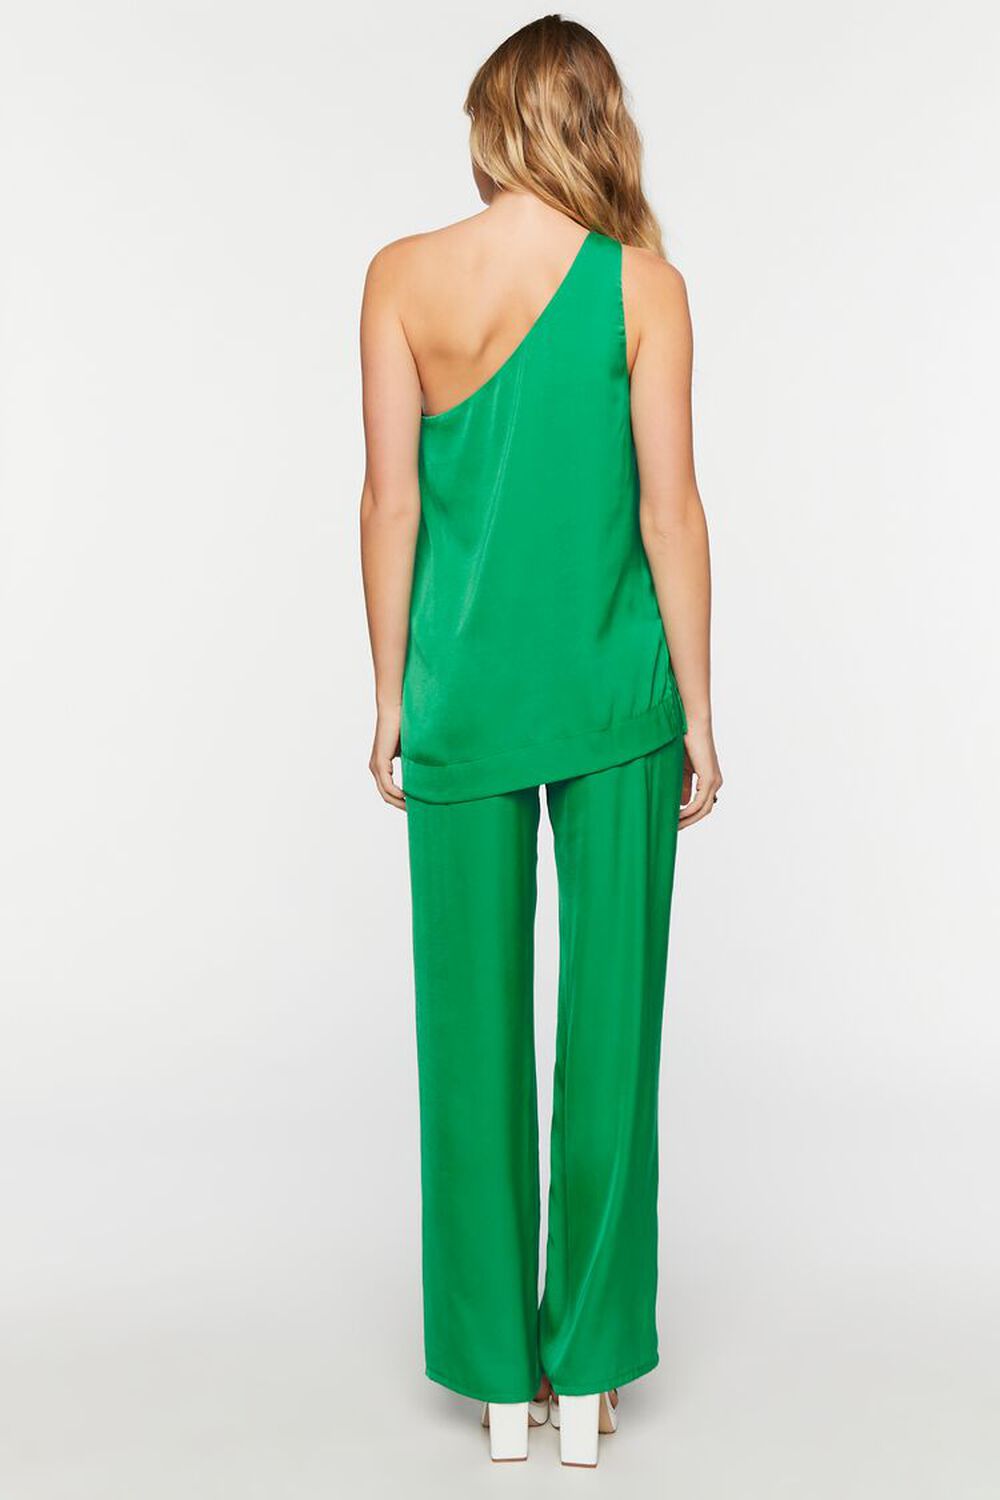 GREEN Satin One-Shoulder Top & Pants Set, image 3